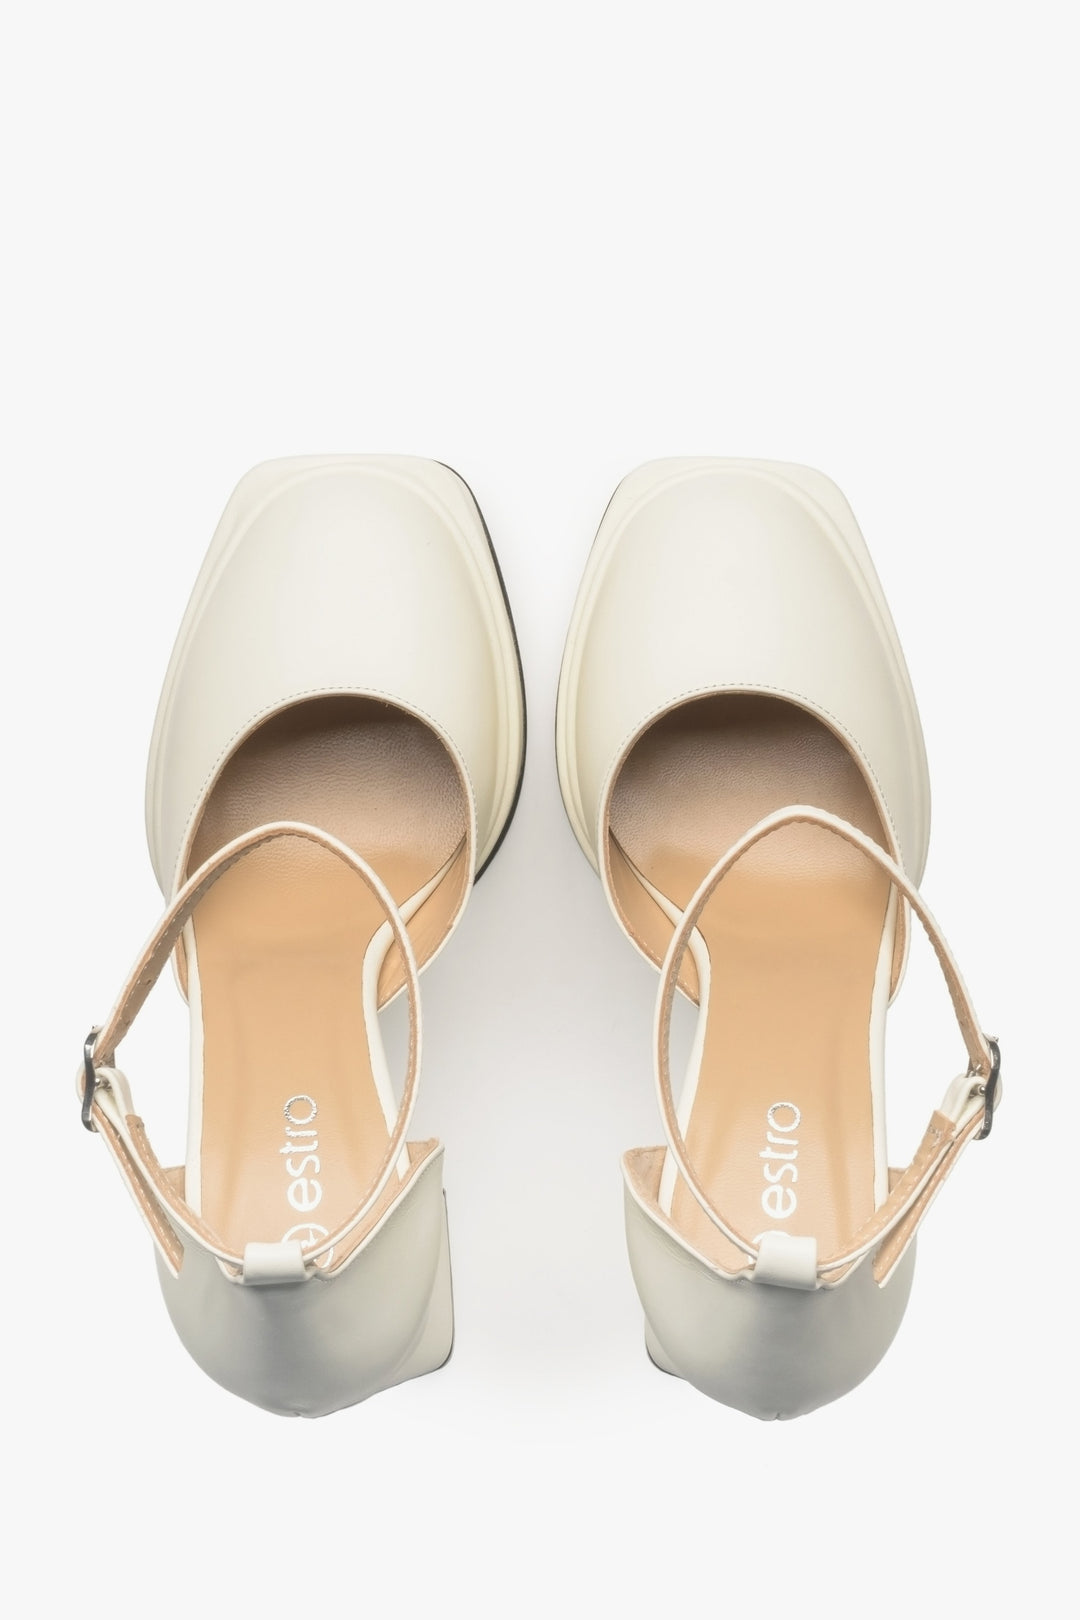 Women's platform sandals Estro in light beige.